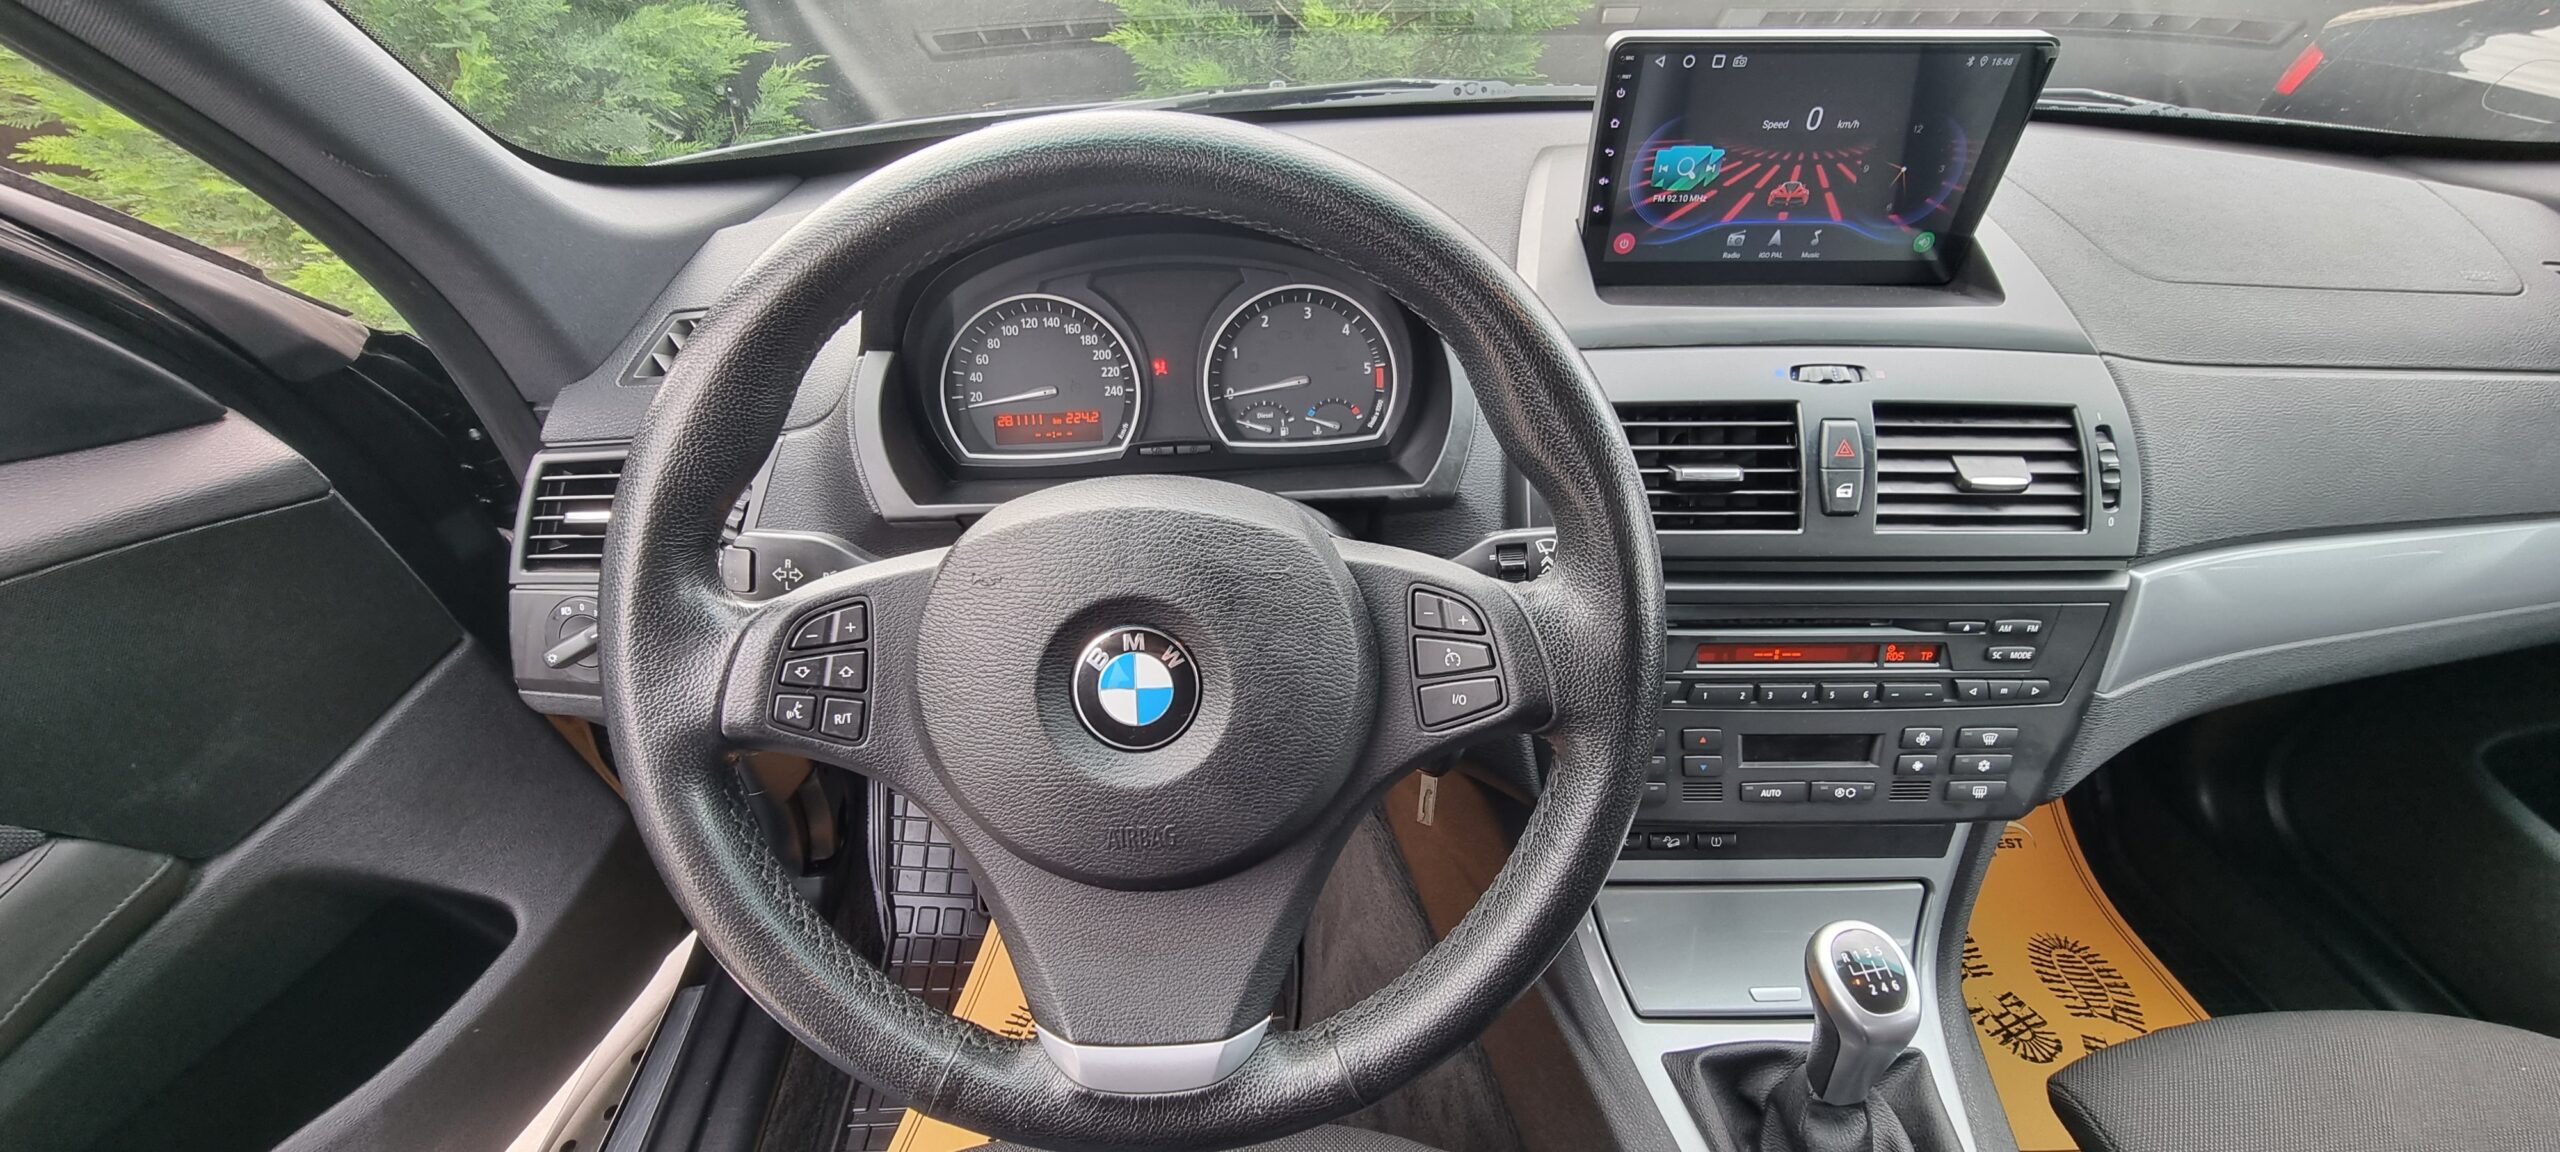 BMW X 3, X-DRIVE, 2.0 DIESEL, 177 CP, EURO 5, AN 2009